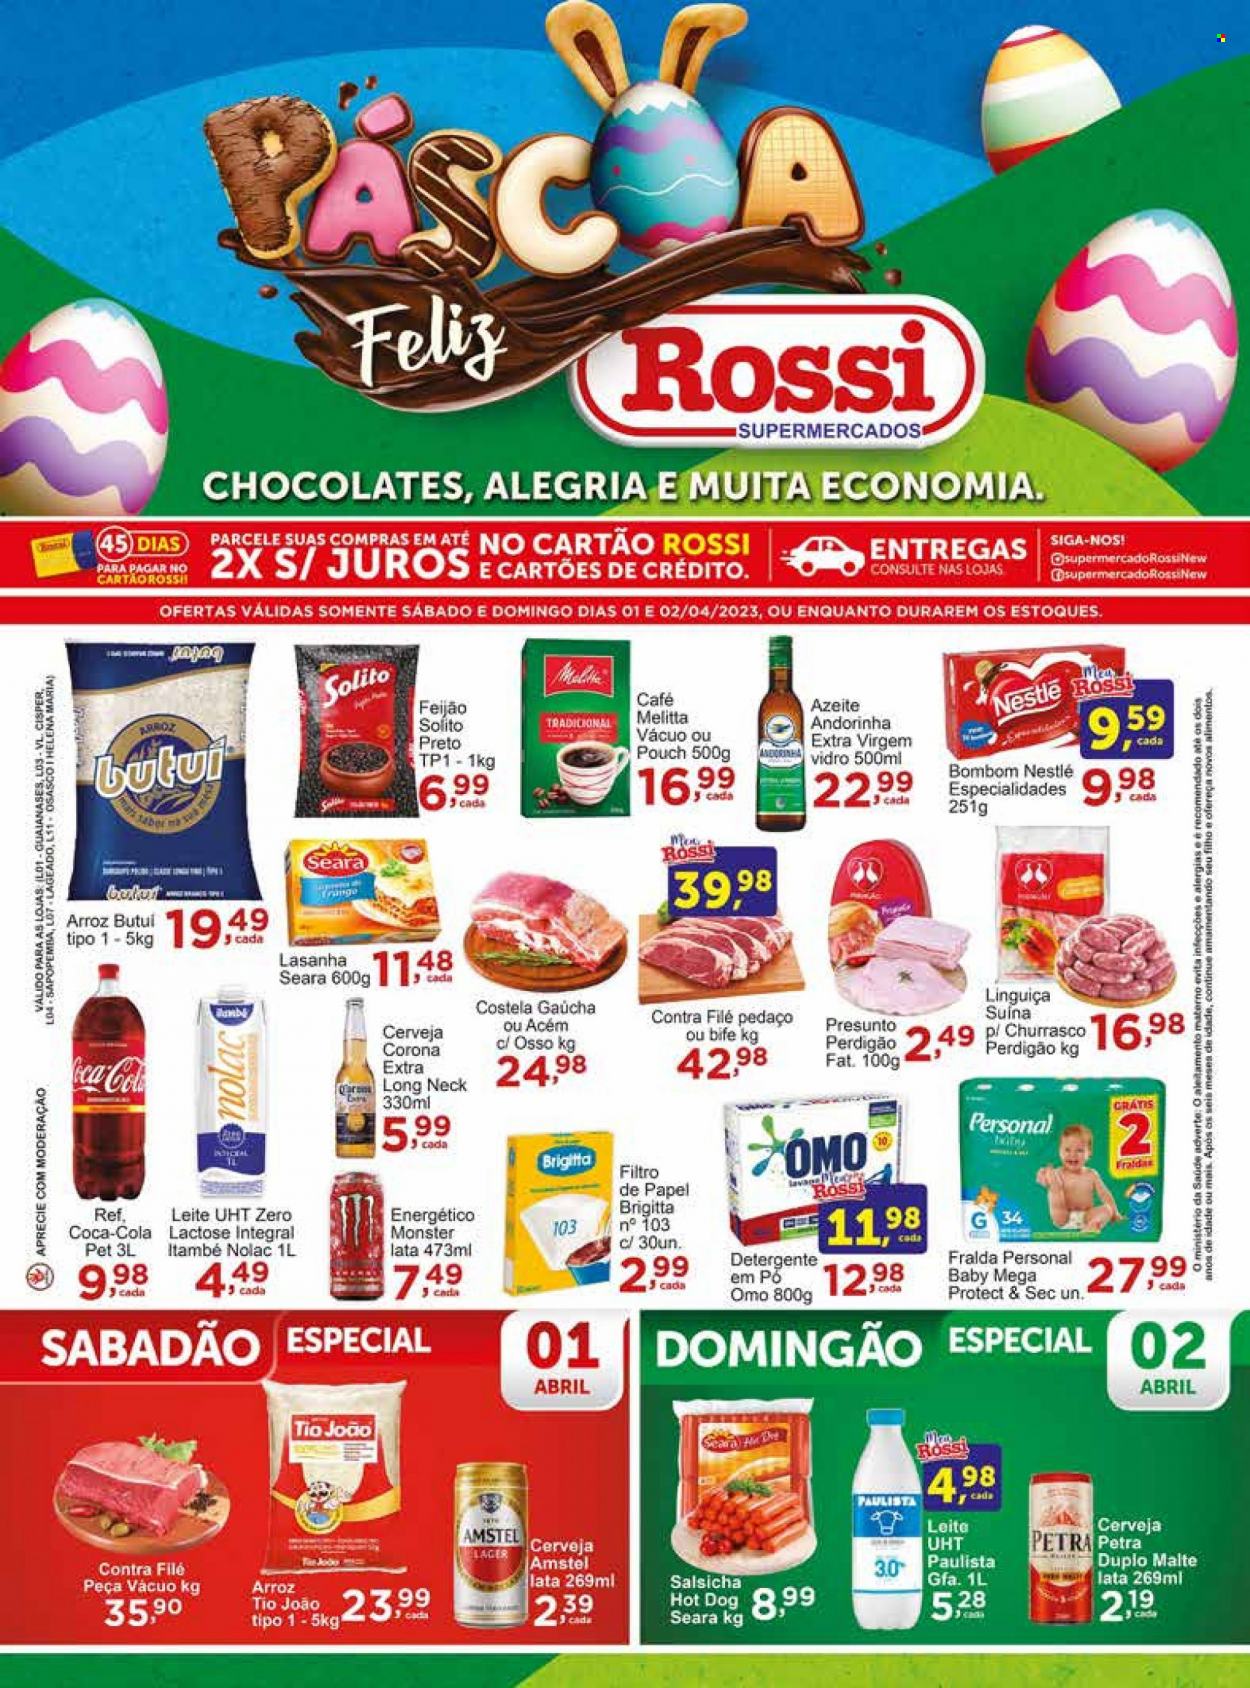 Encarte Rossi Supermercados  - 01.04.2023 - 02.04.2023.